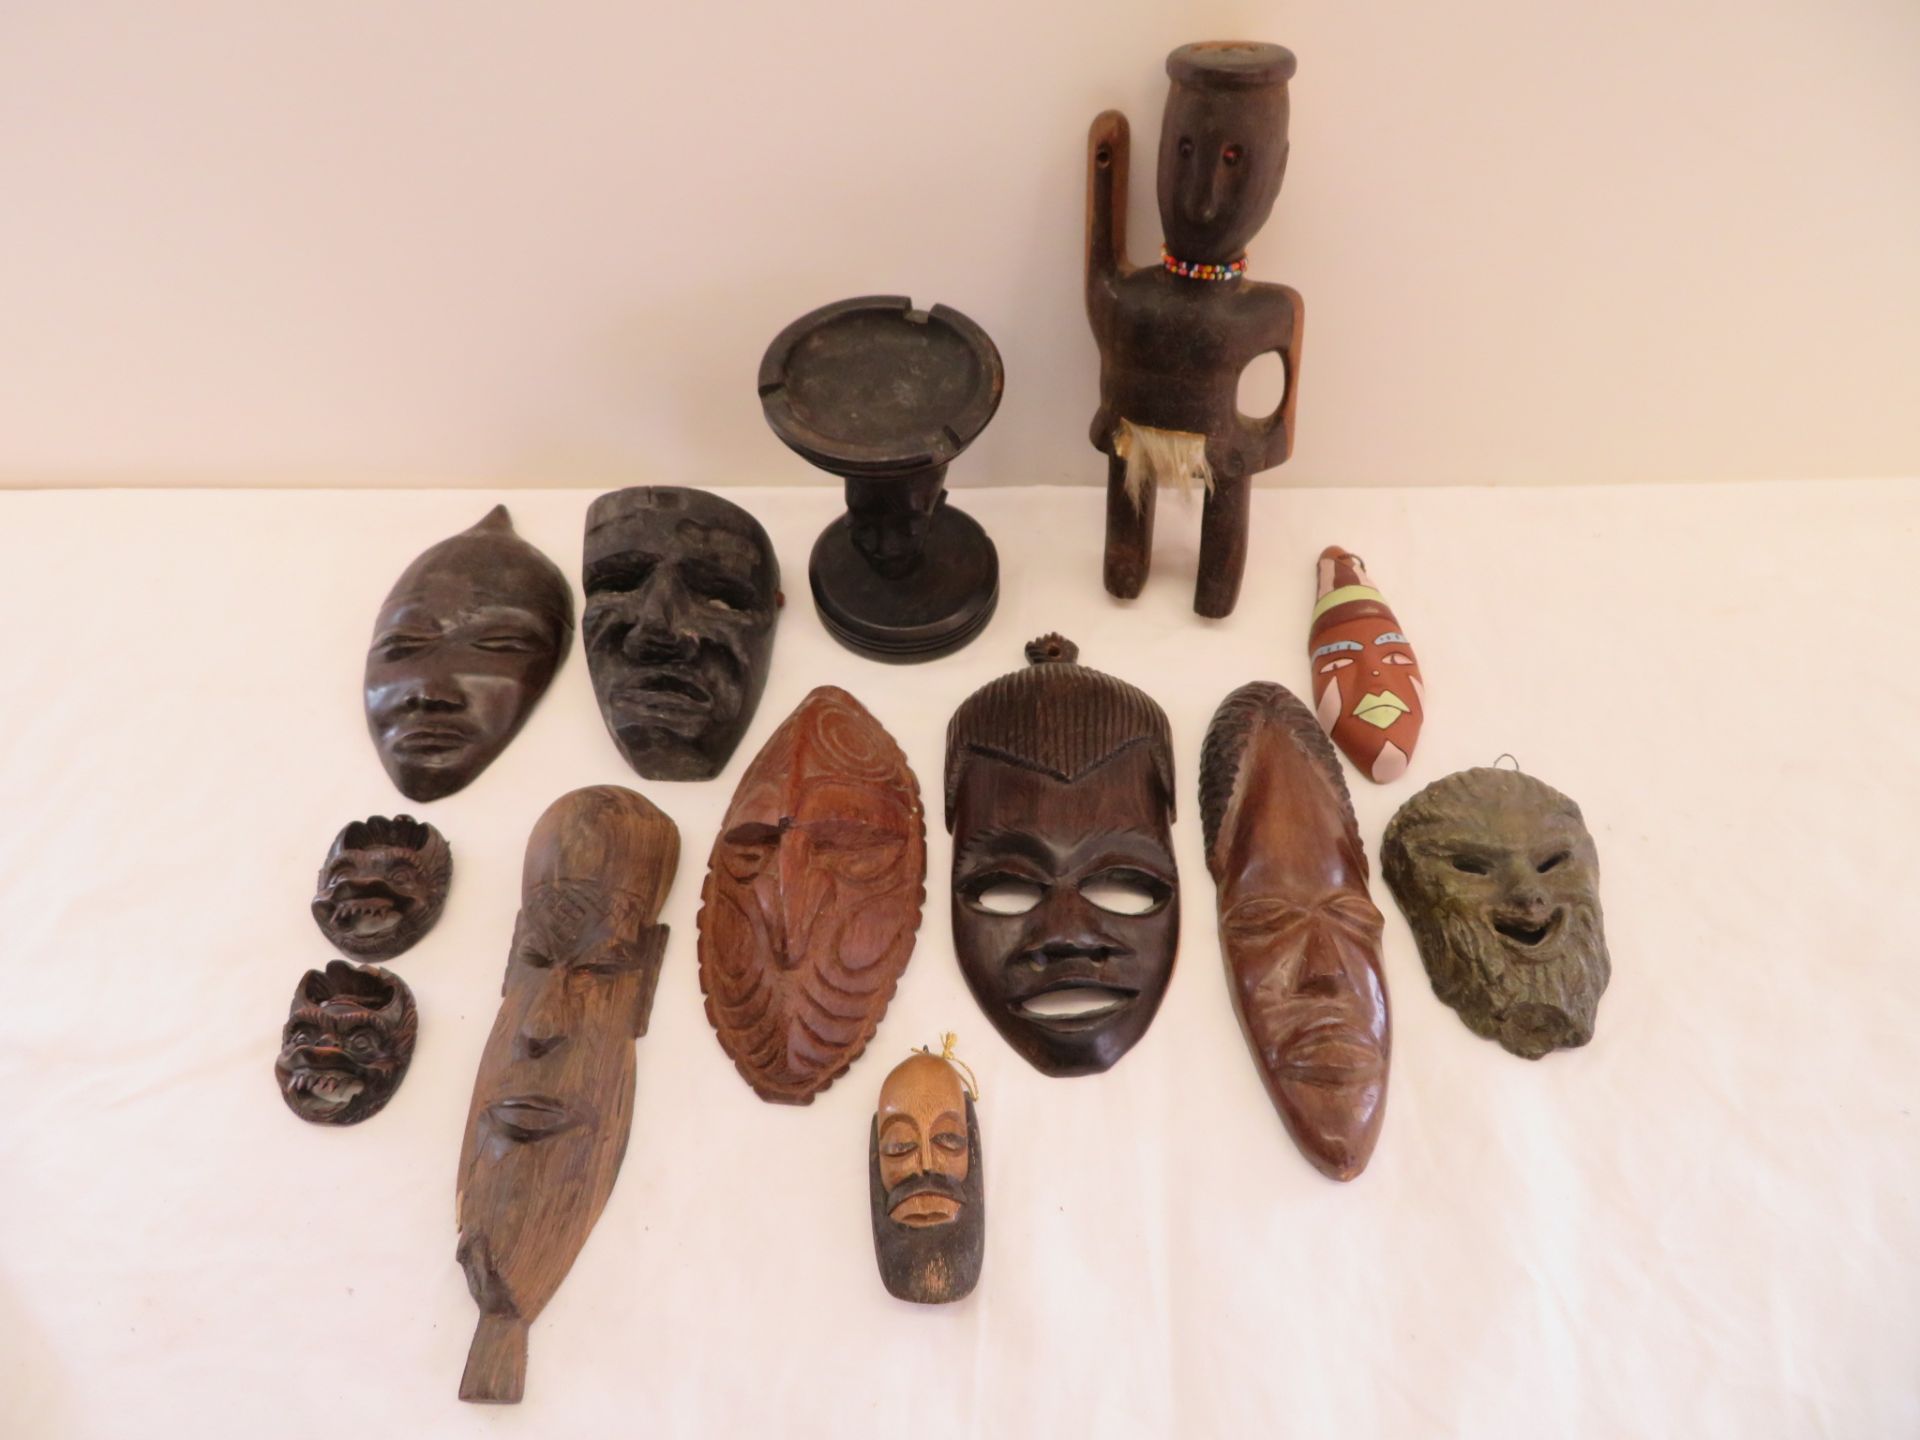 13 teiliges Konvolut diverser Skulpturen und Masken, u.a. Afrika, Holz geschnitzt, höchste Höhe 20 